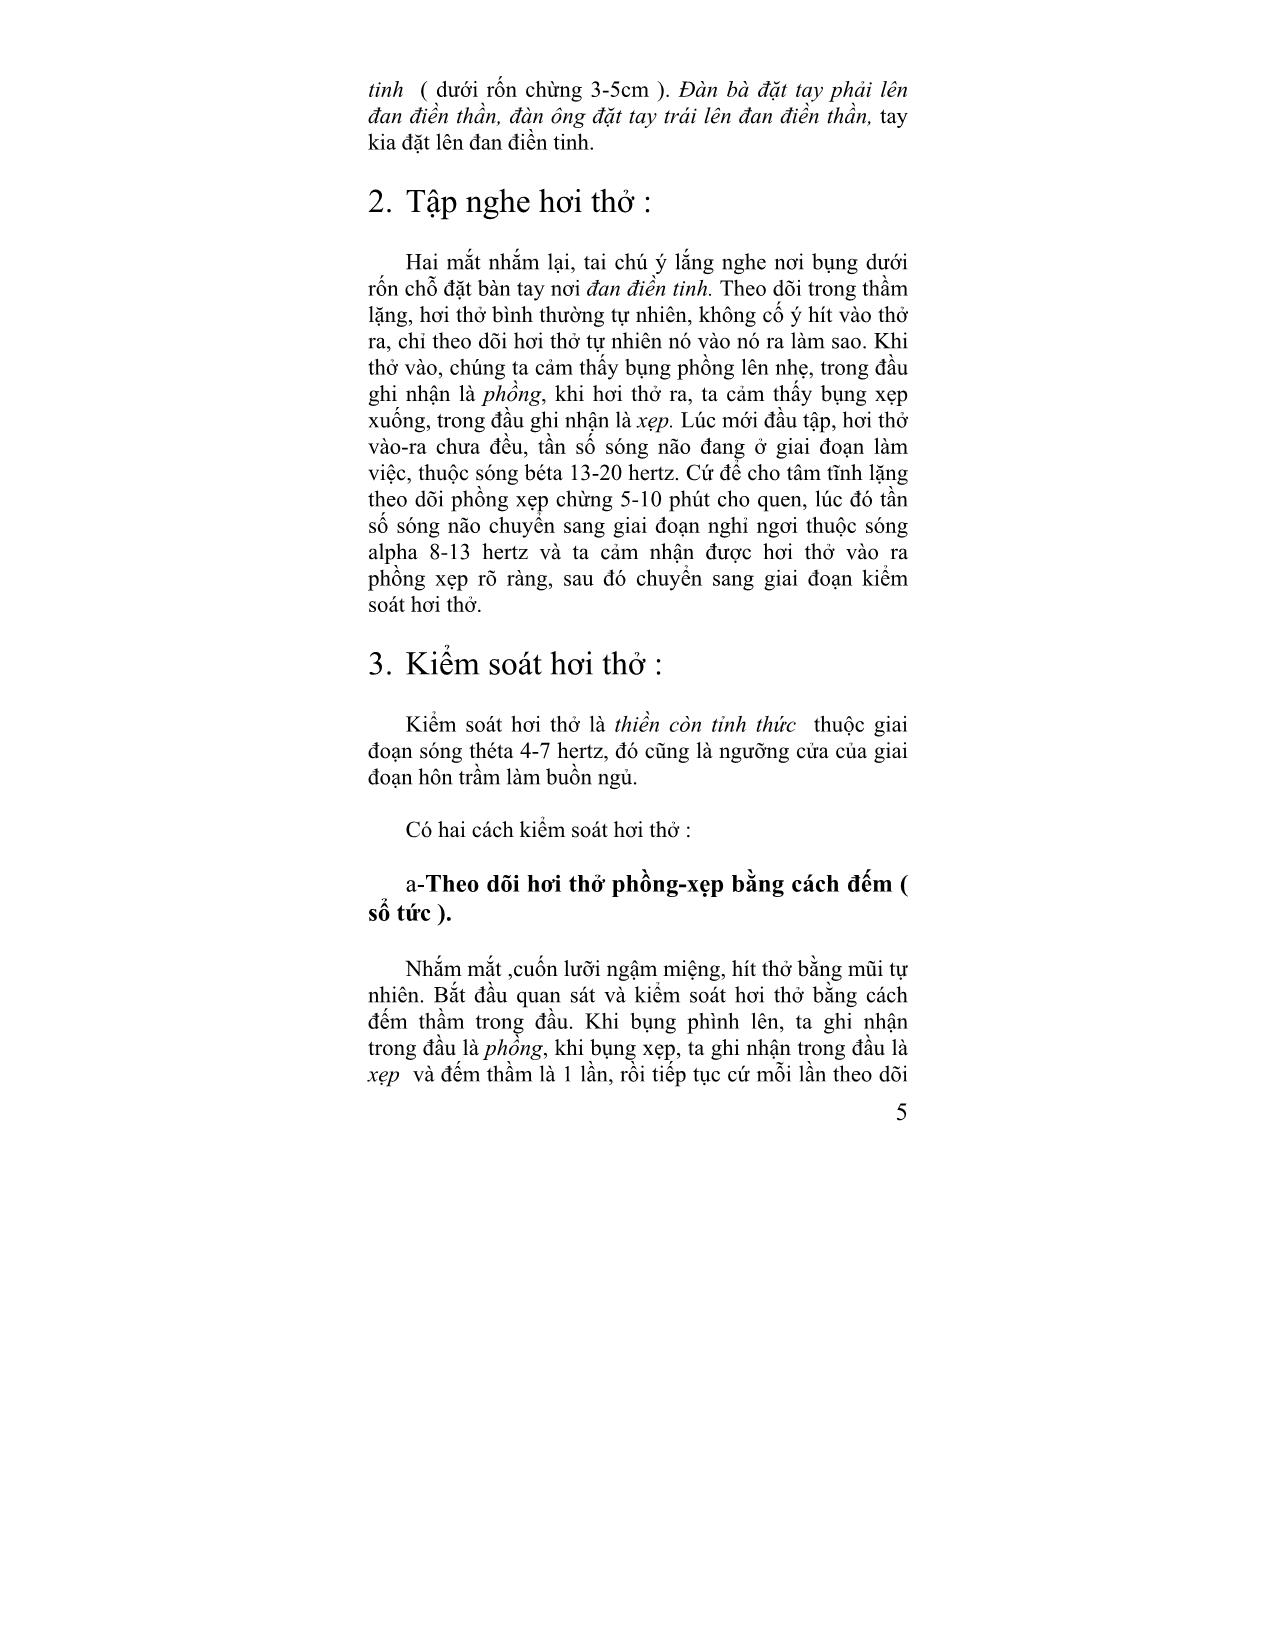 Giáo trình Câu chuyện đông y (Tập 2) trang 5